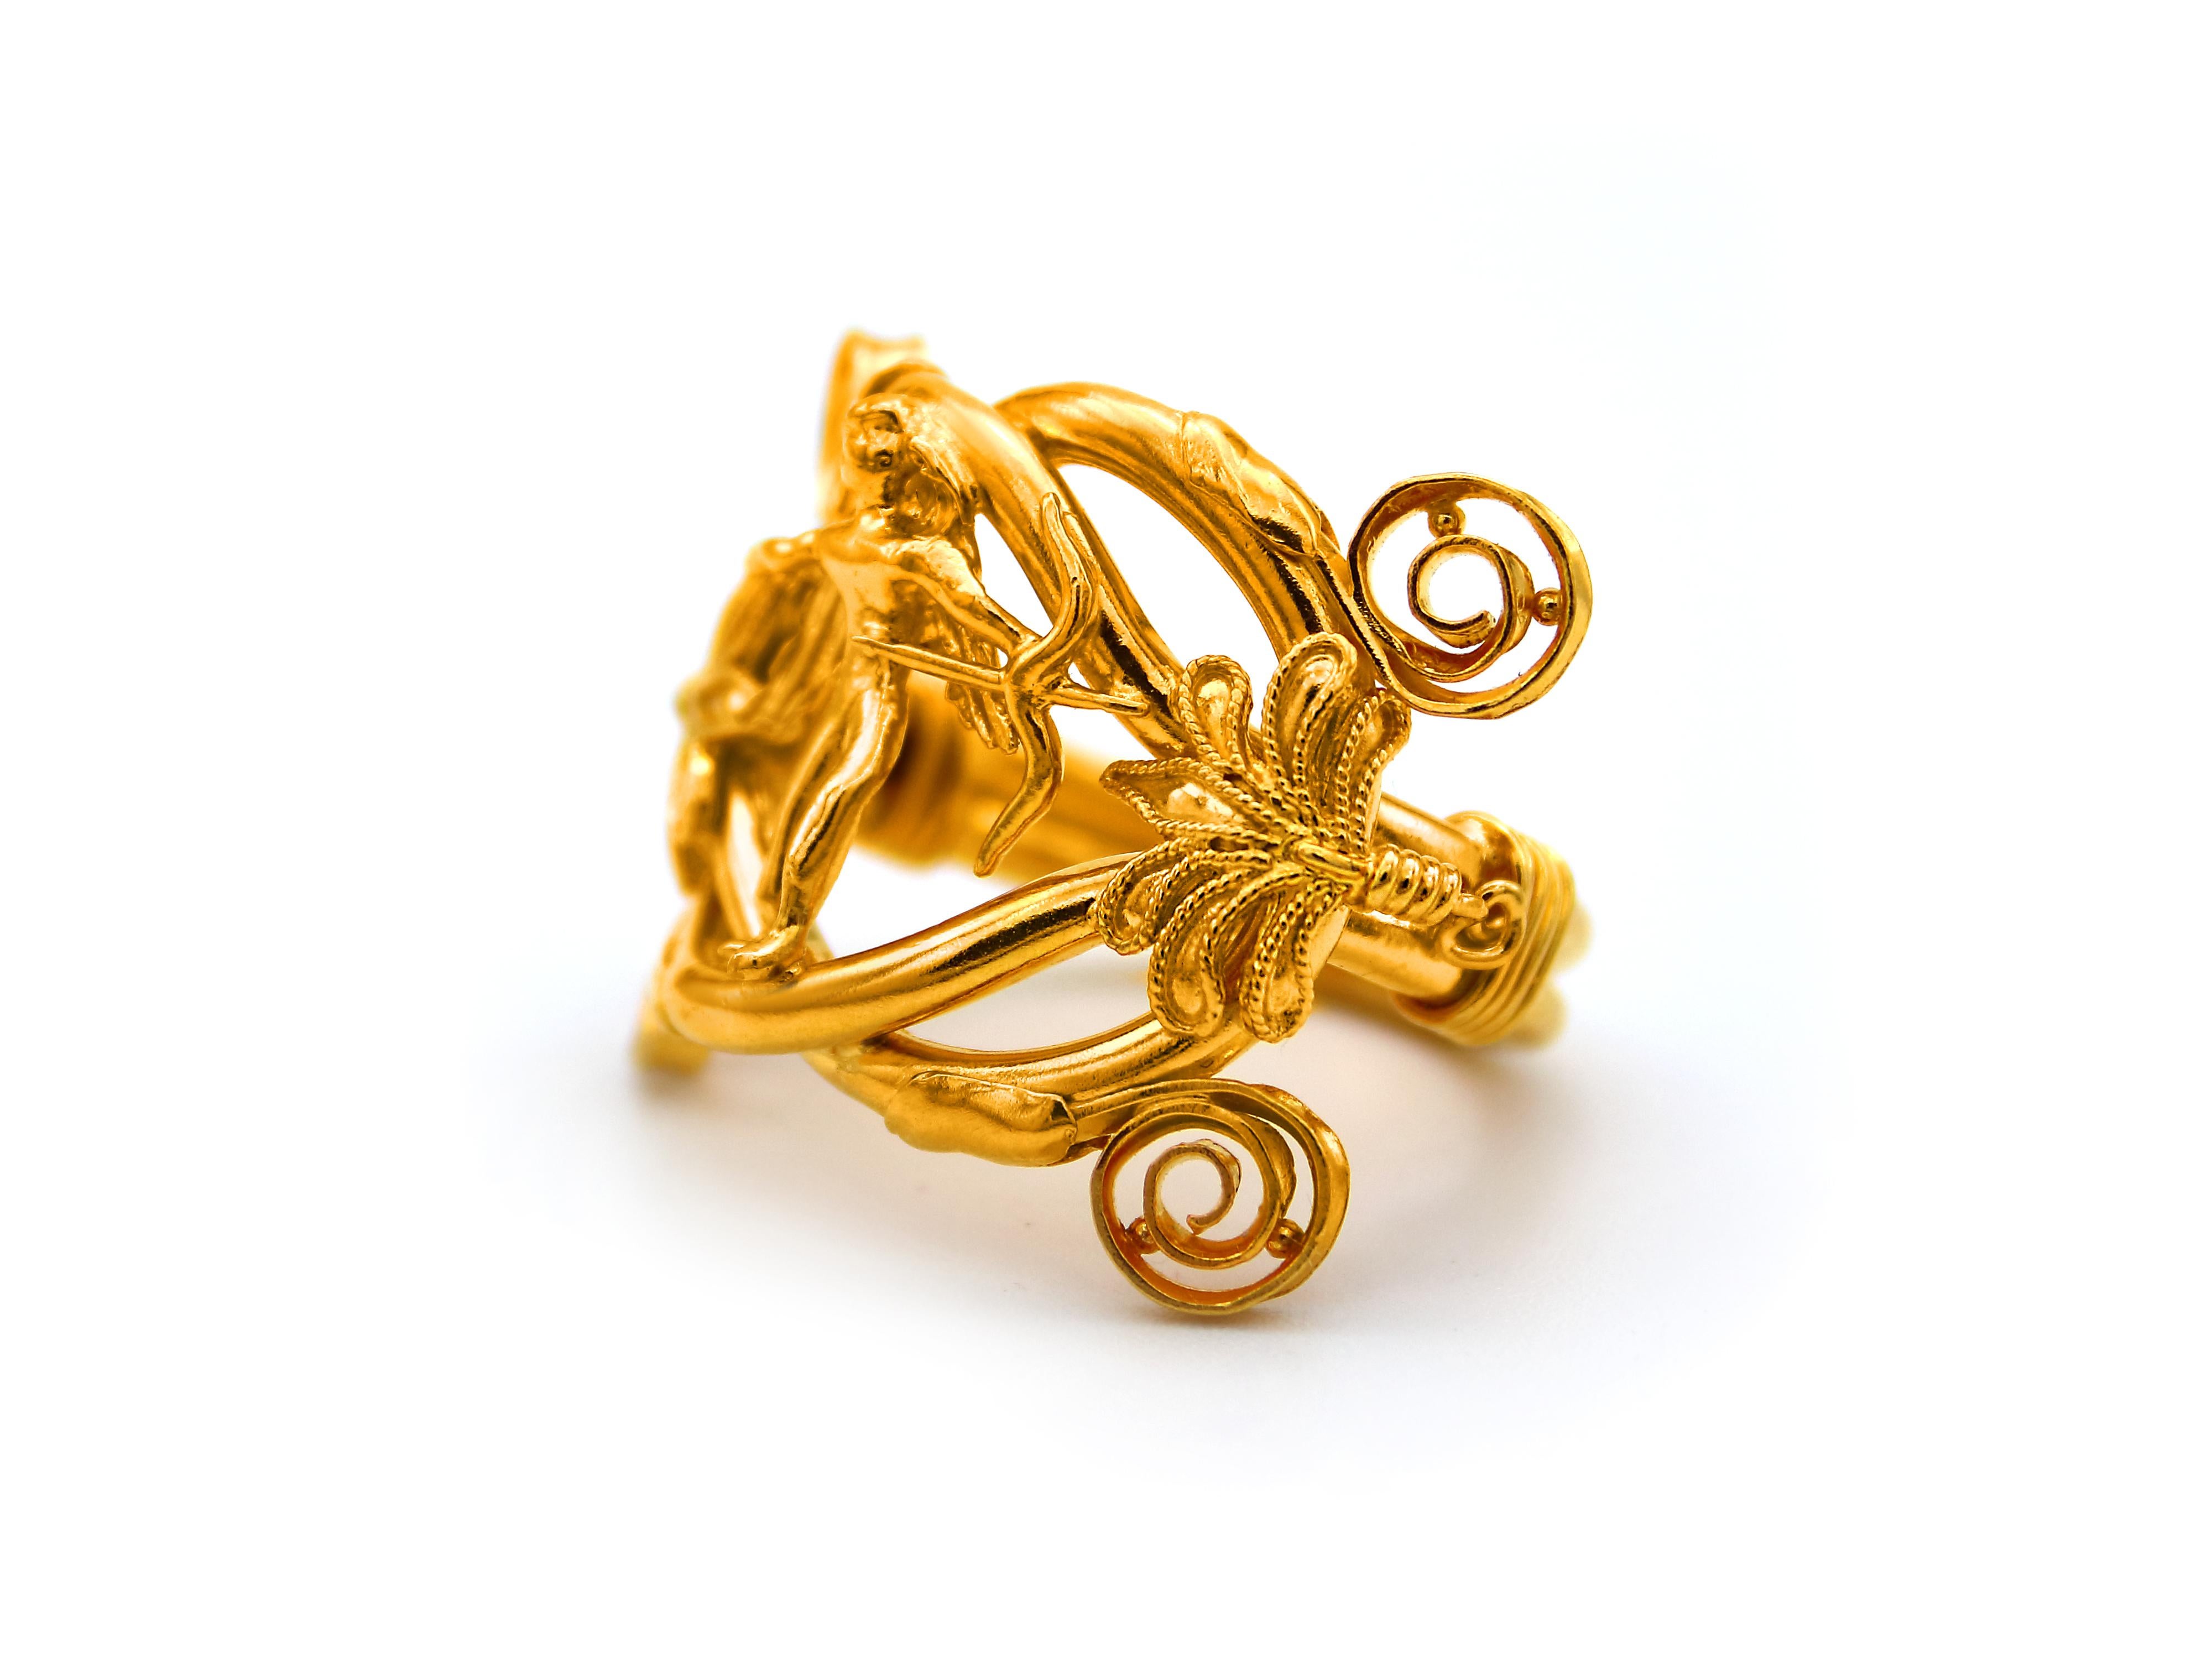 Ring EROS (Gott der Liebe). Majestic Ring in 22 Karat Gold von der ursprünglichen Halskette der Mitte des 4. Jahrhunderts v. Chr. in der Ausgrabung in Mazedonien Bereich gefunden, wo der Palast von König Philips König der Makedonen und Vater von